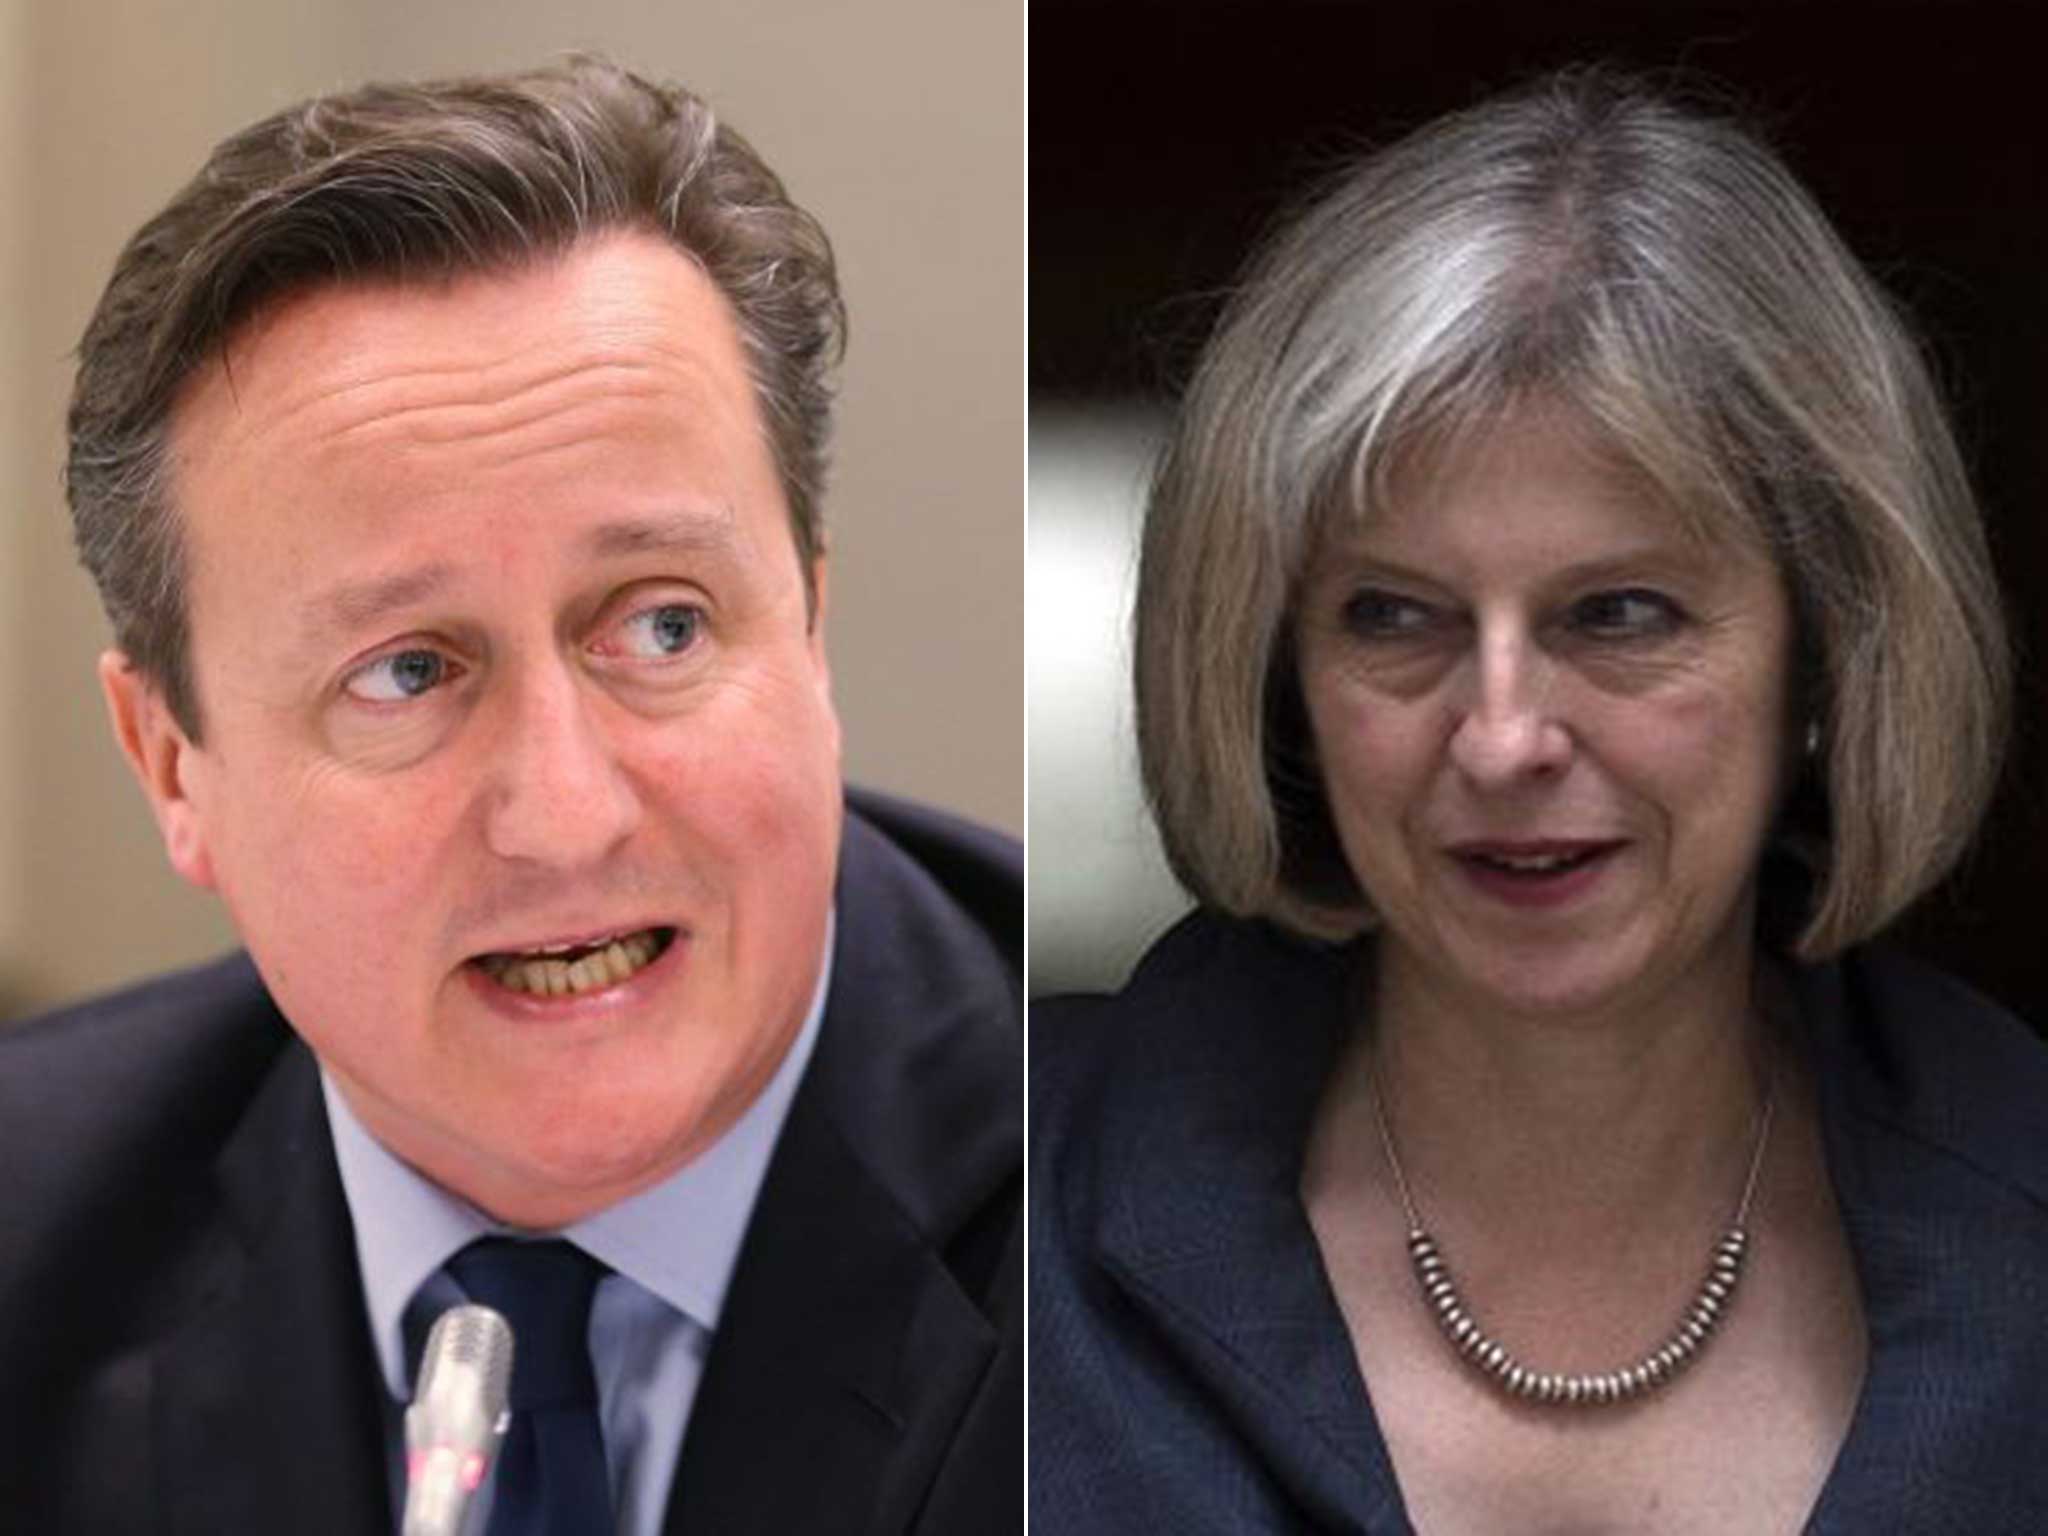 PM David Cameron and Home Secretary Theresa May